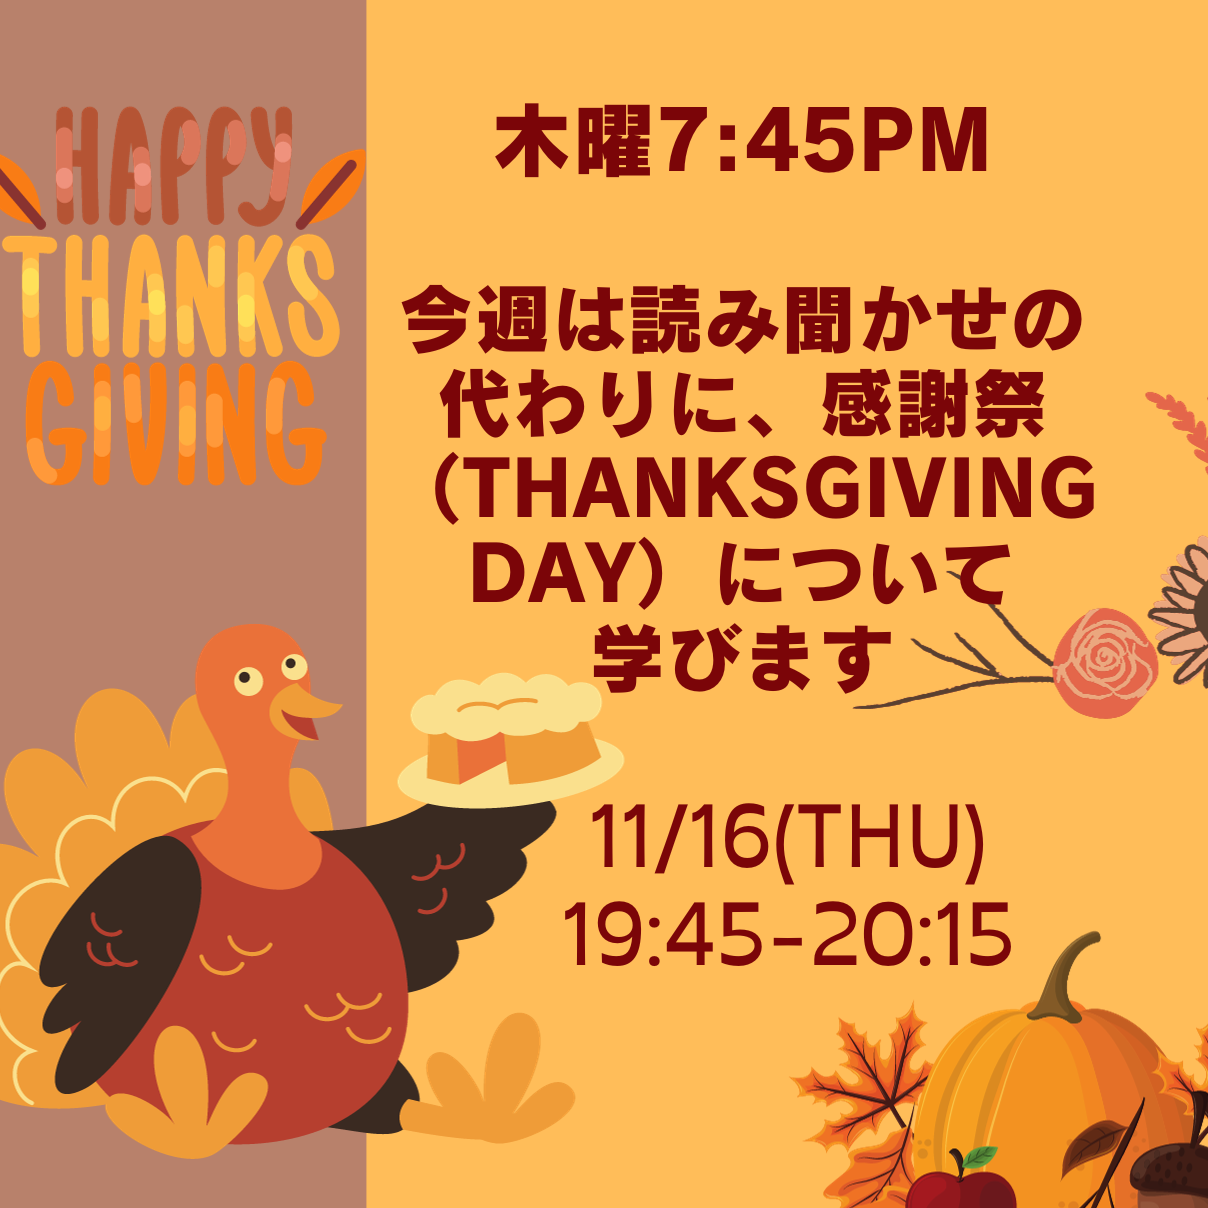 Pop-up Session: "Thanksgiving Day" / 今週は読み聞かせの代わりにThanksgivingについて学びます。